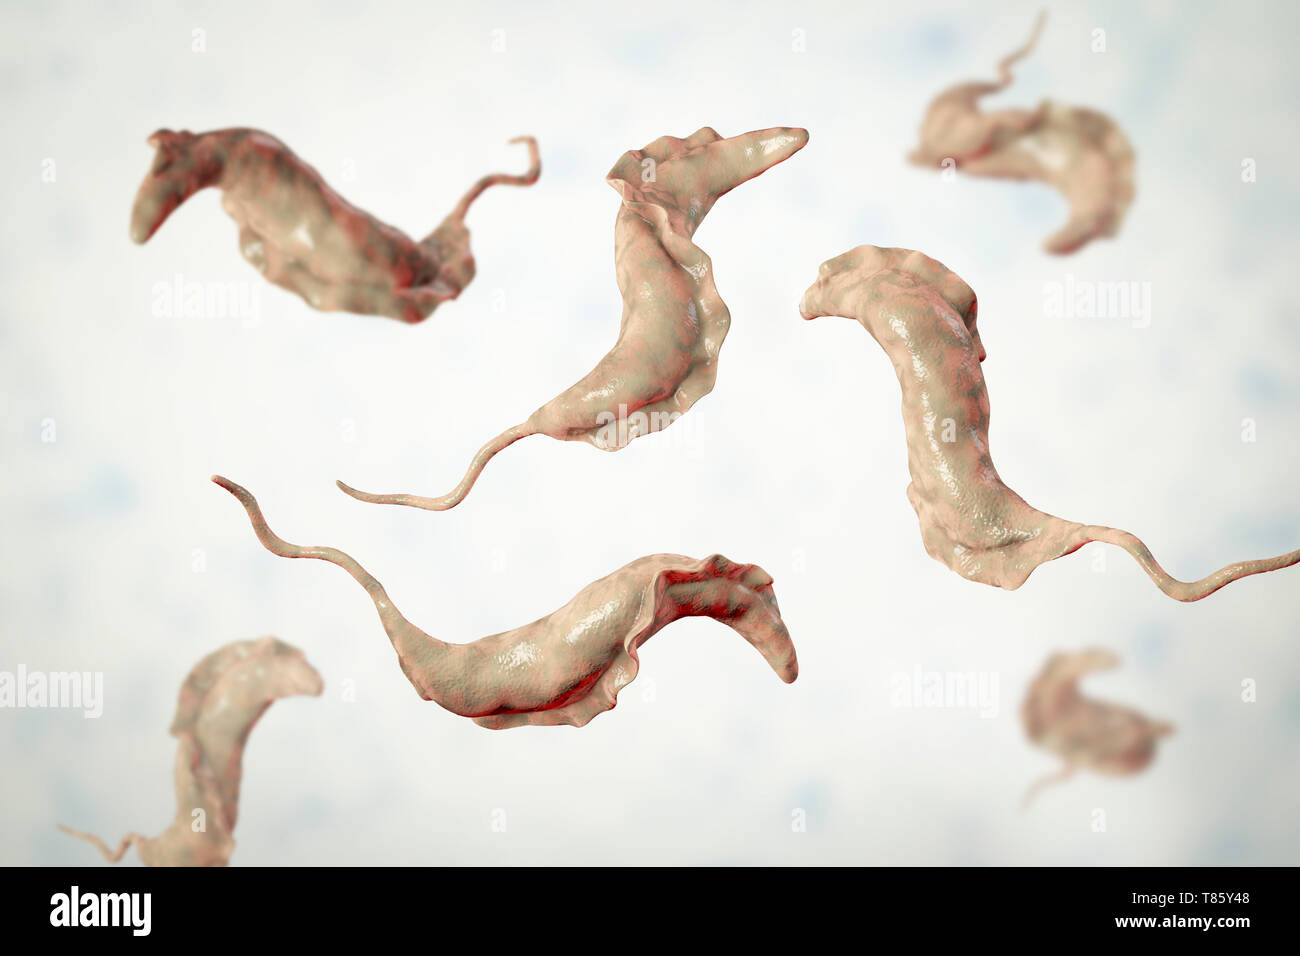 Parasite de la maladie de Chagas, illustration Banque D'Images